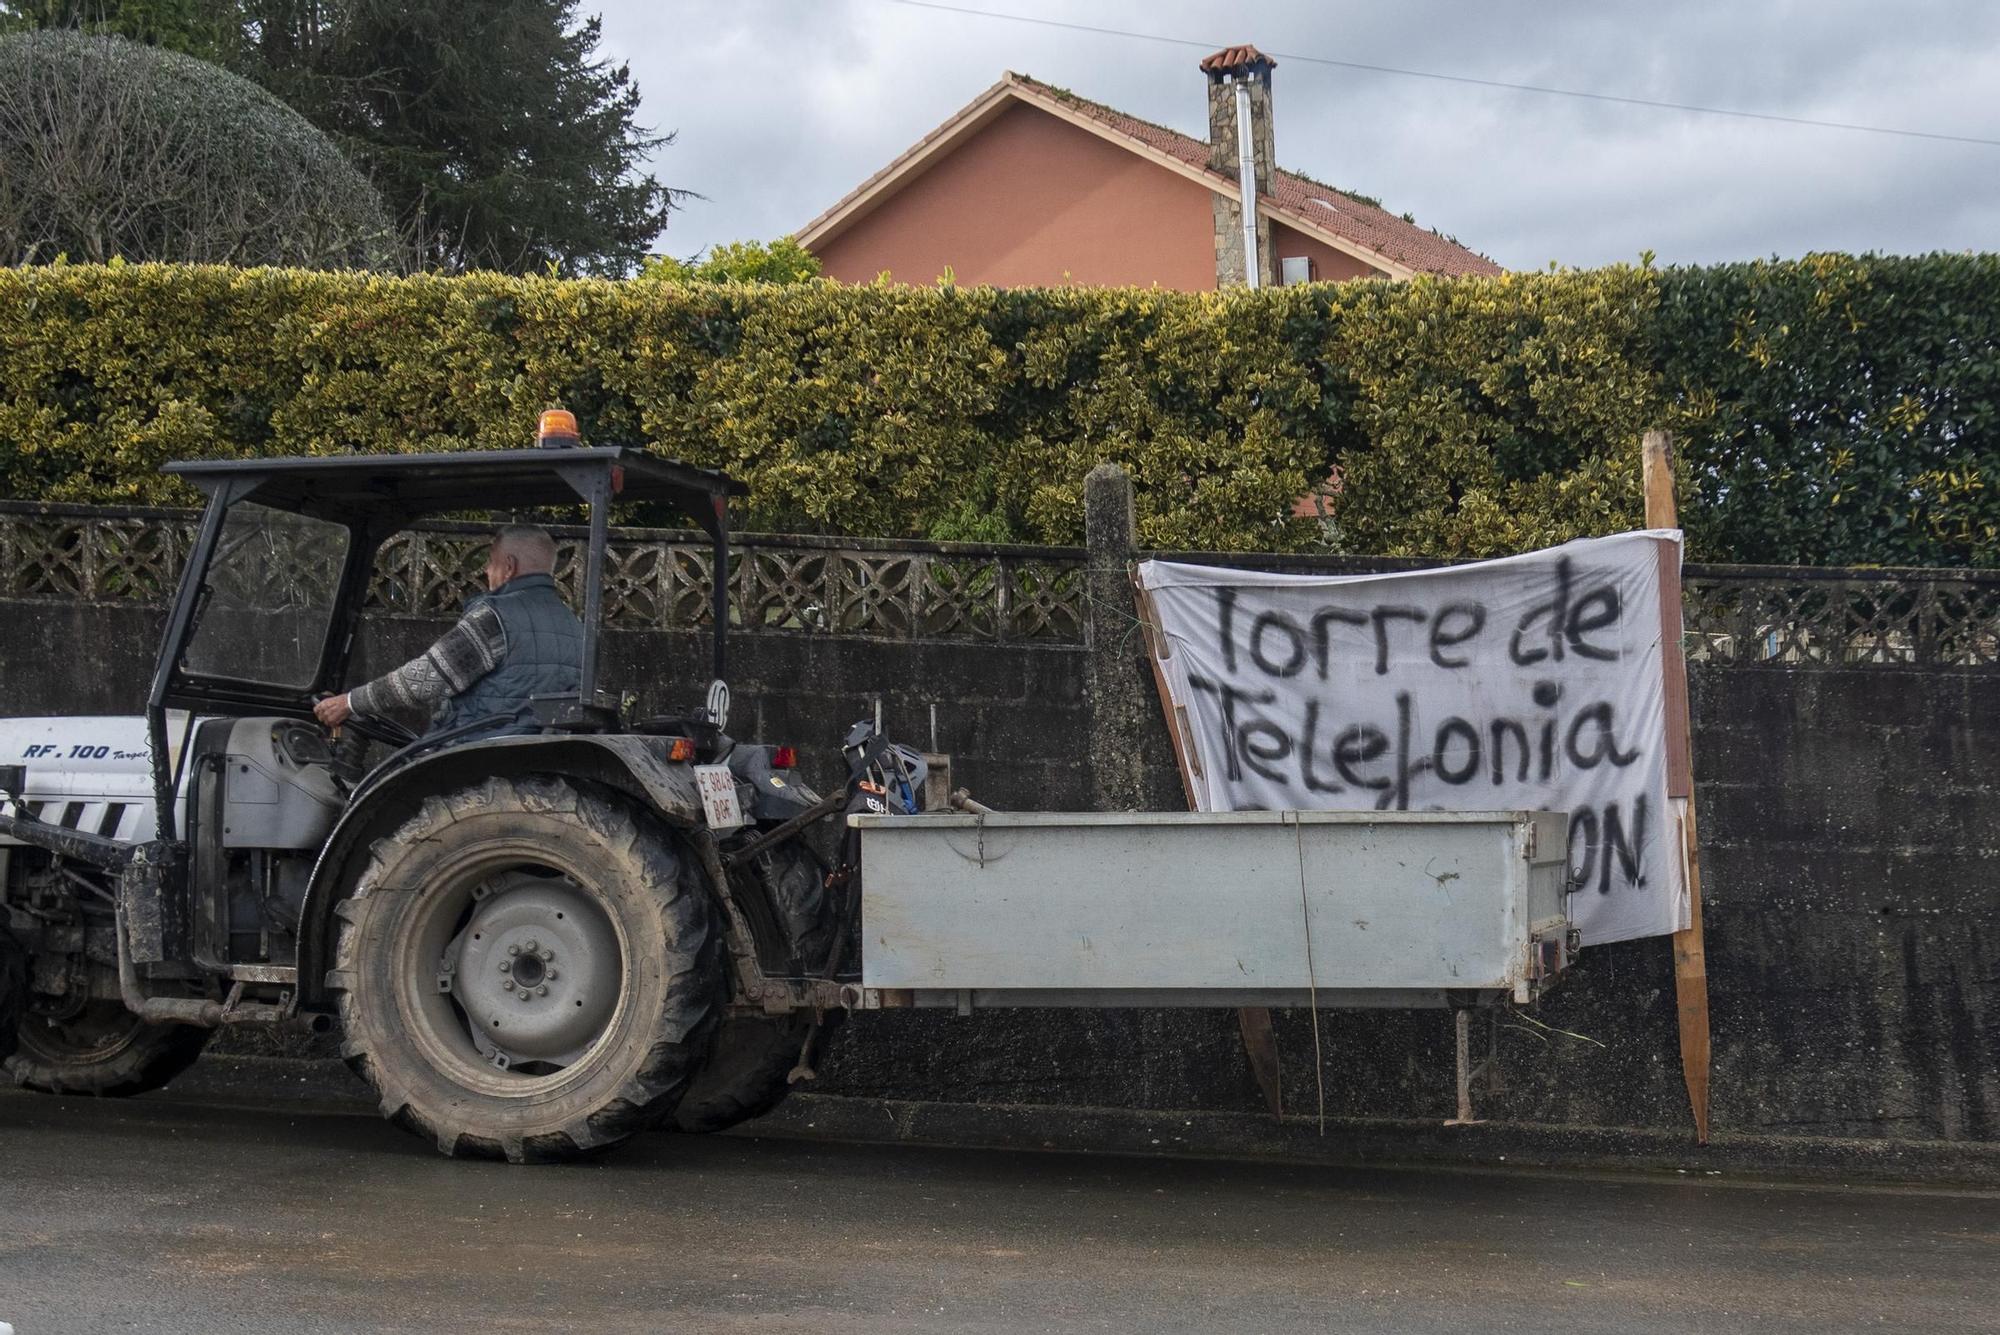 Vecinos de Anceis protestan por la instalación de una antena de telefonía móvil